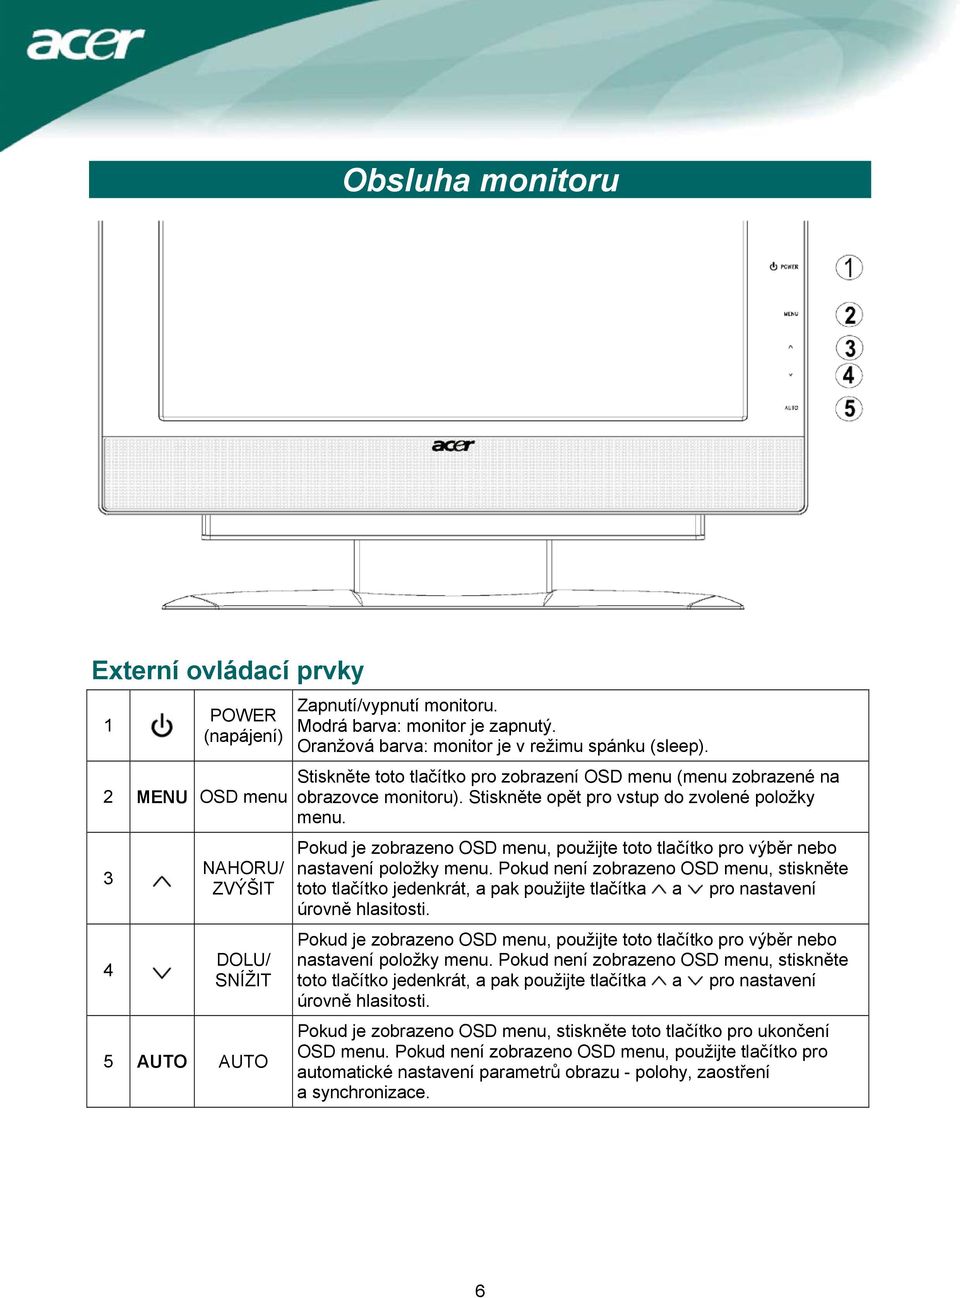 Pokud je zobrazeno OSD menu, použijte toto tlačítko pro výběr nebo nastavení položky menu.